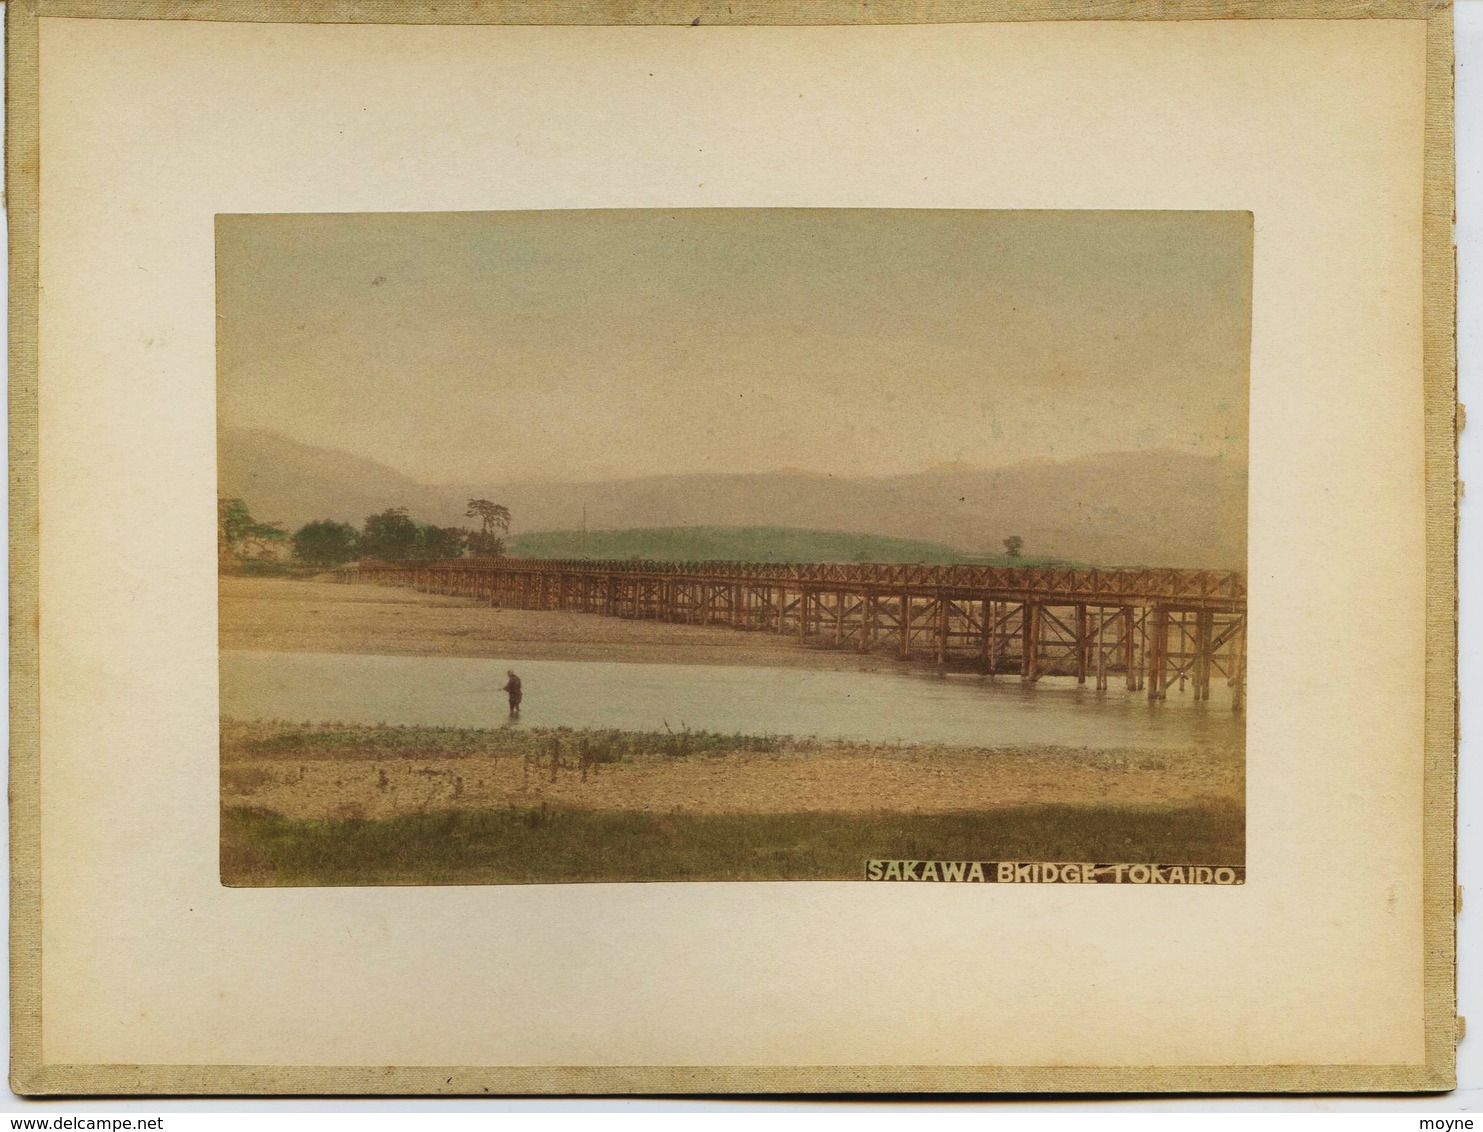 2 Photos Du Japon - XIXéme - Sur Papier Albuminé - 1) SAKAWA BRIDGE TOKAIDO ( Disparu ?? )  - 2) MARCHE AUX FLEURS ?? - Anciennes (Av. 1900)